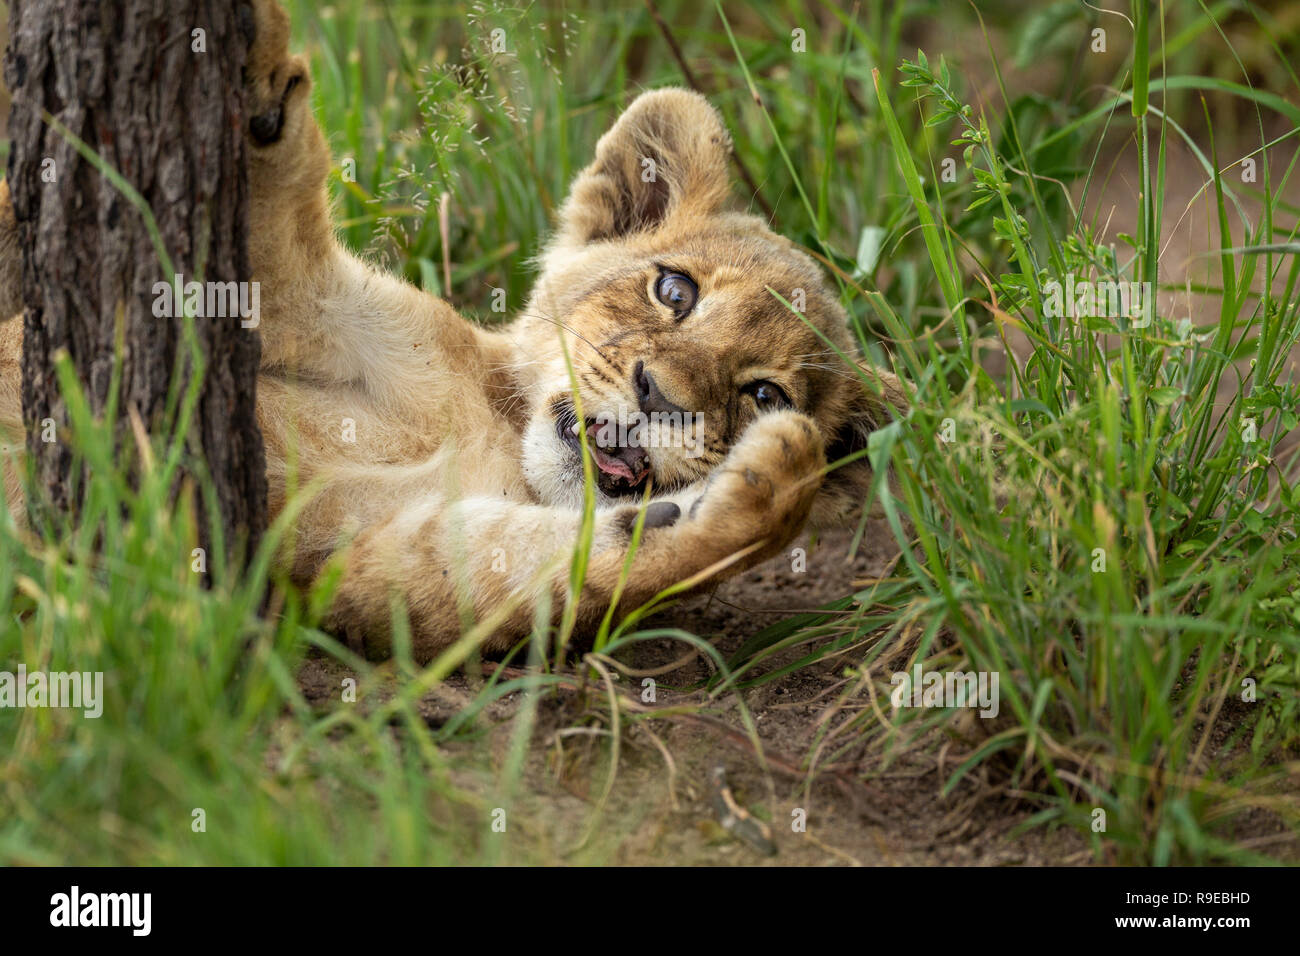 Cute Lion Junge im Gras liegend während des Spielens gegen ein Baum Stockfoto